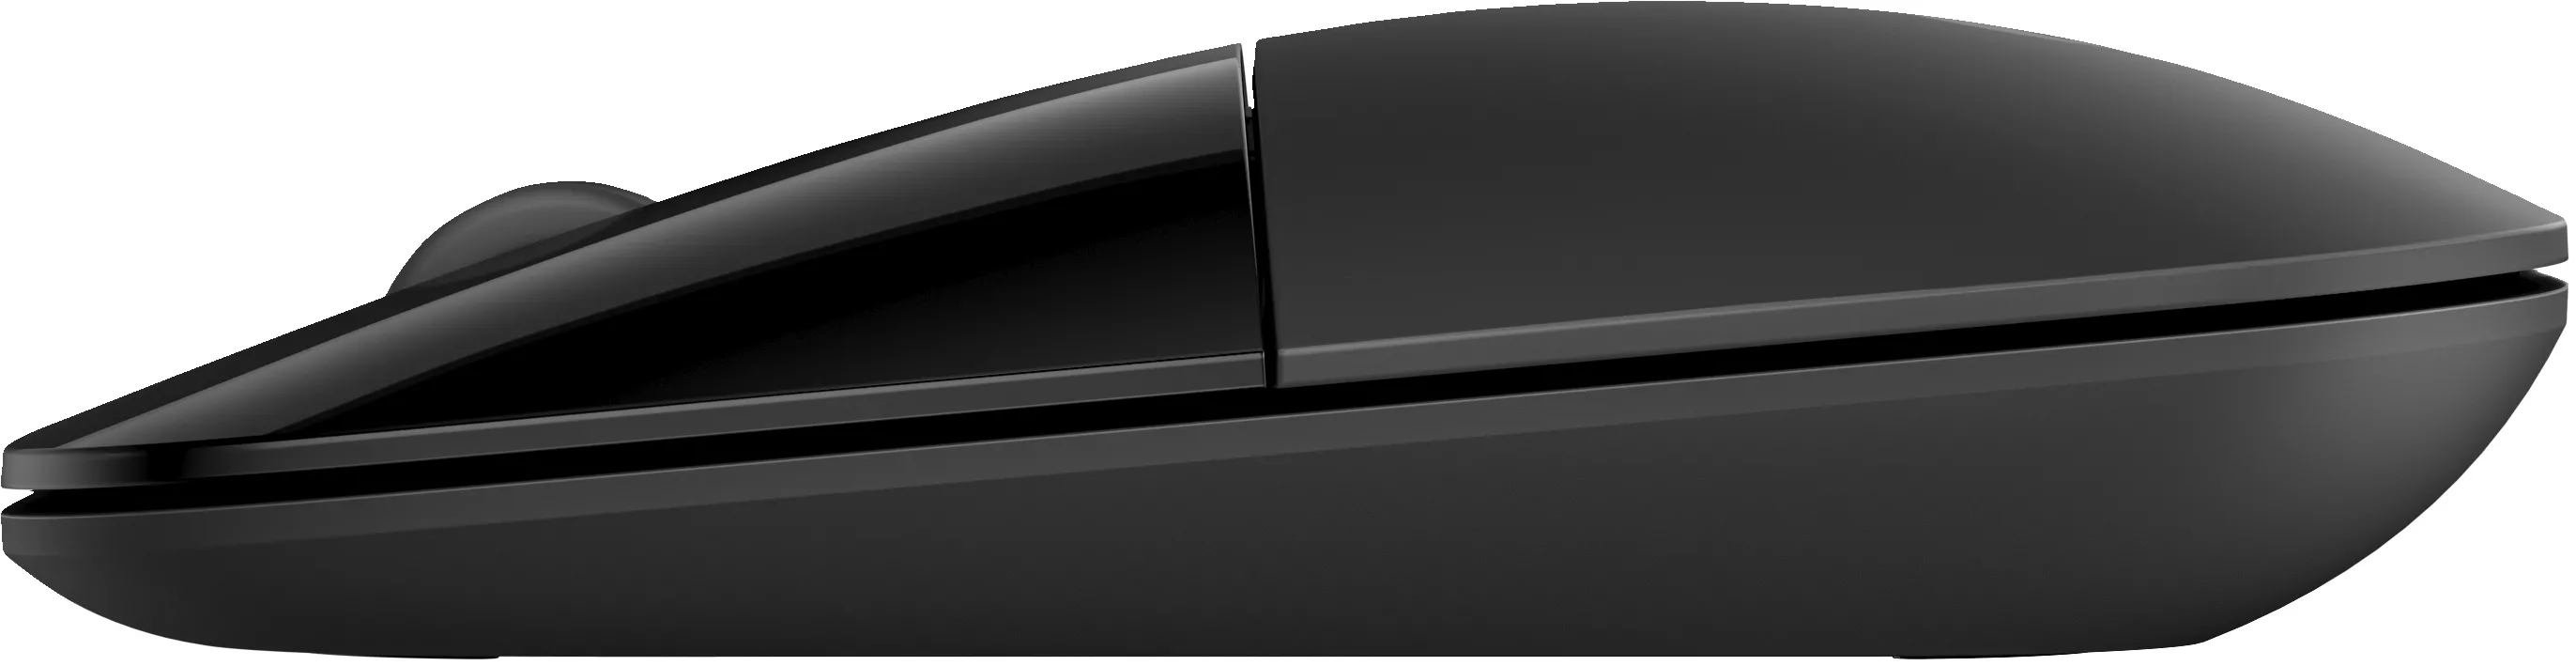 Vente HP Z3700 Dual Mode Wireless Mouse - Black HP au meilleur prix - visuel 4